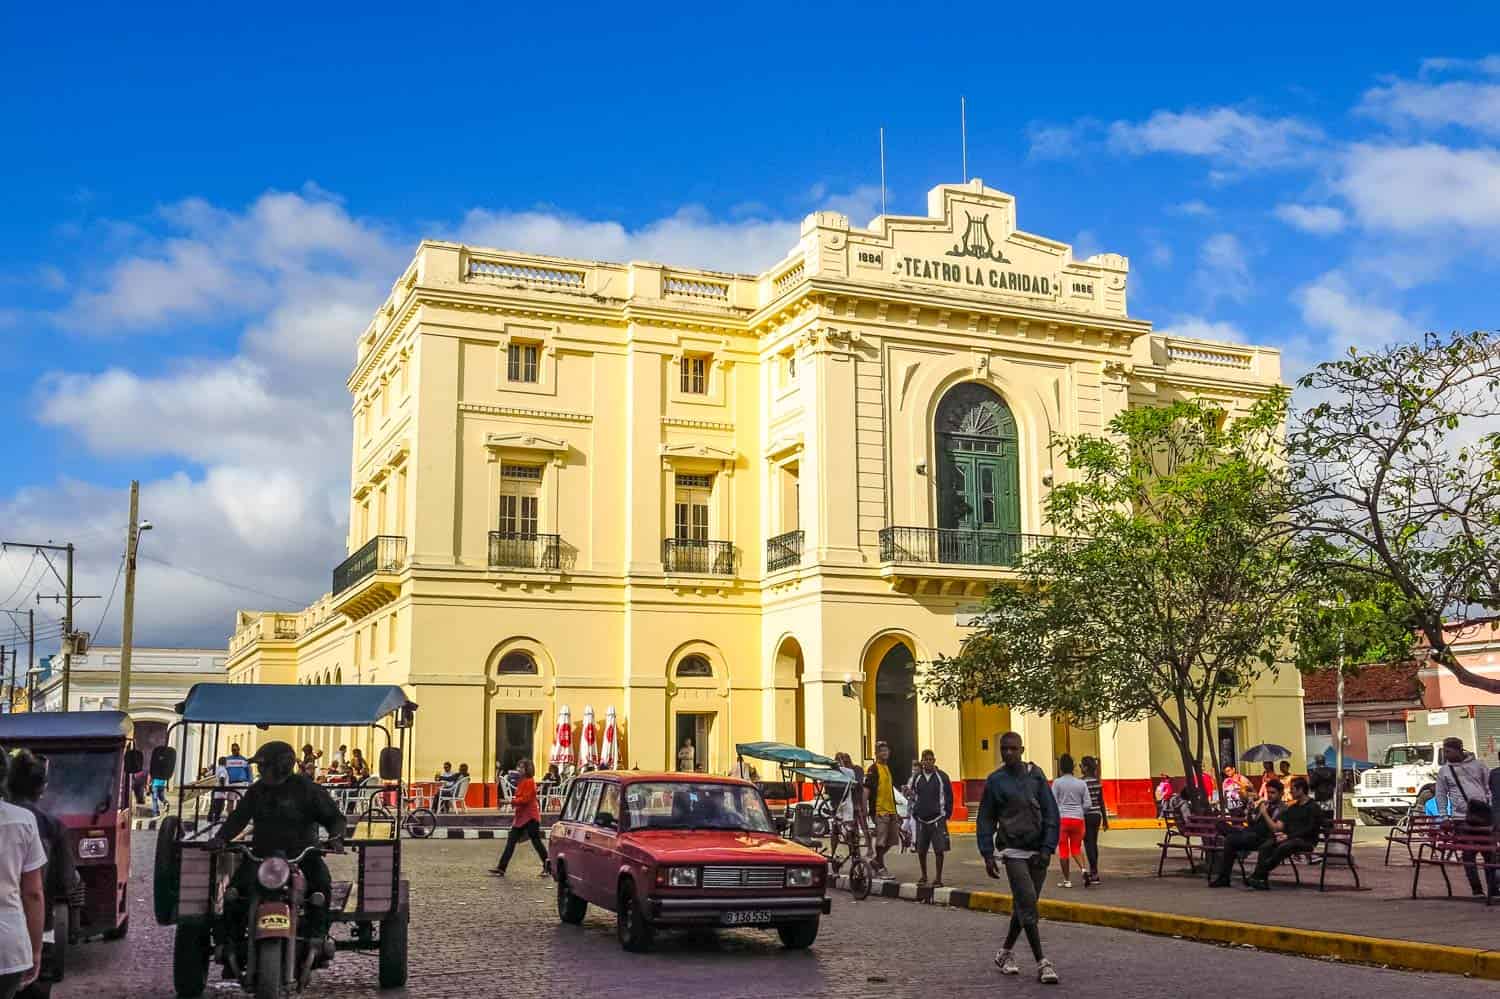 La Caridad Theatre in Santa Clara Cuba